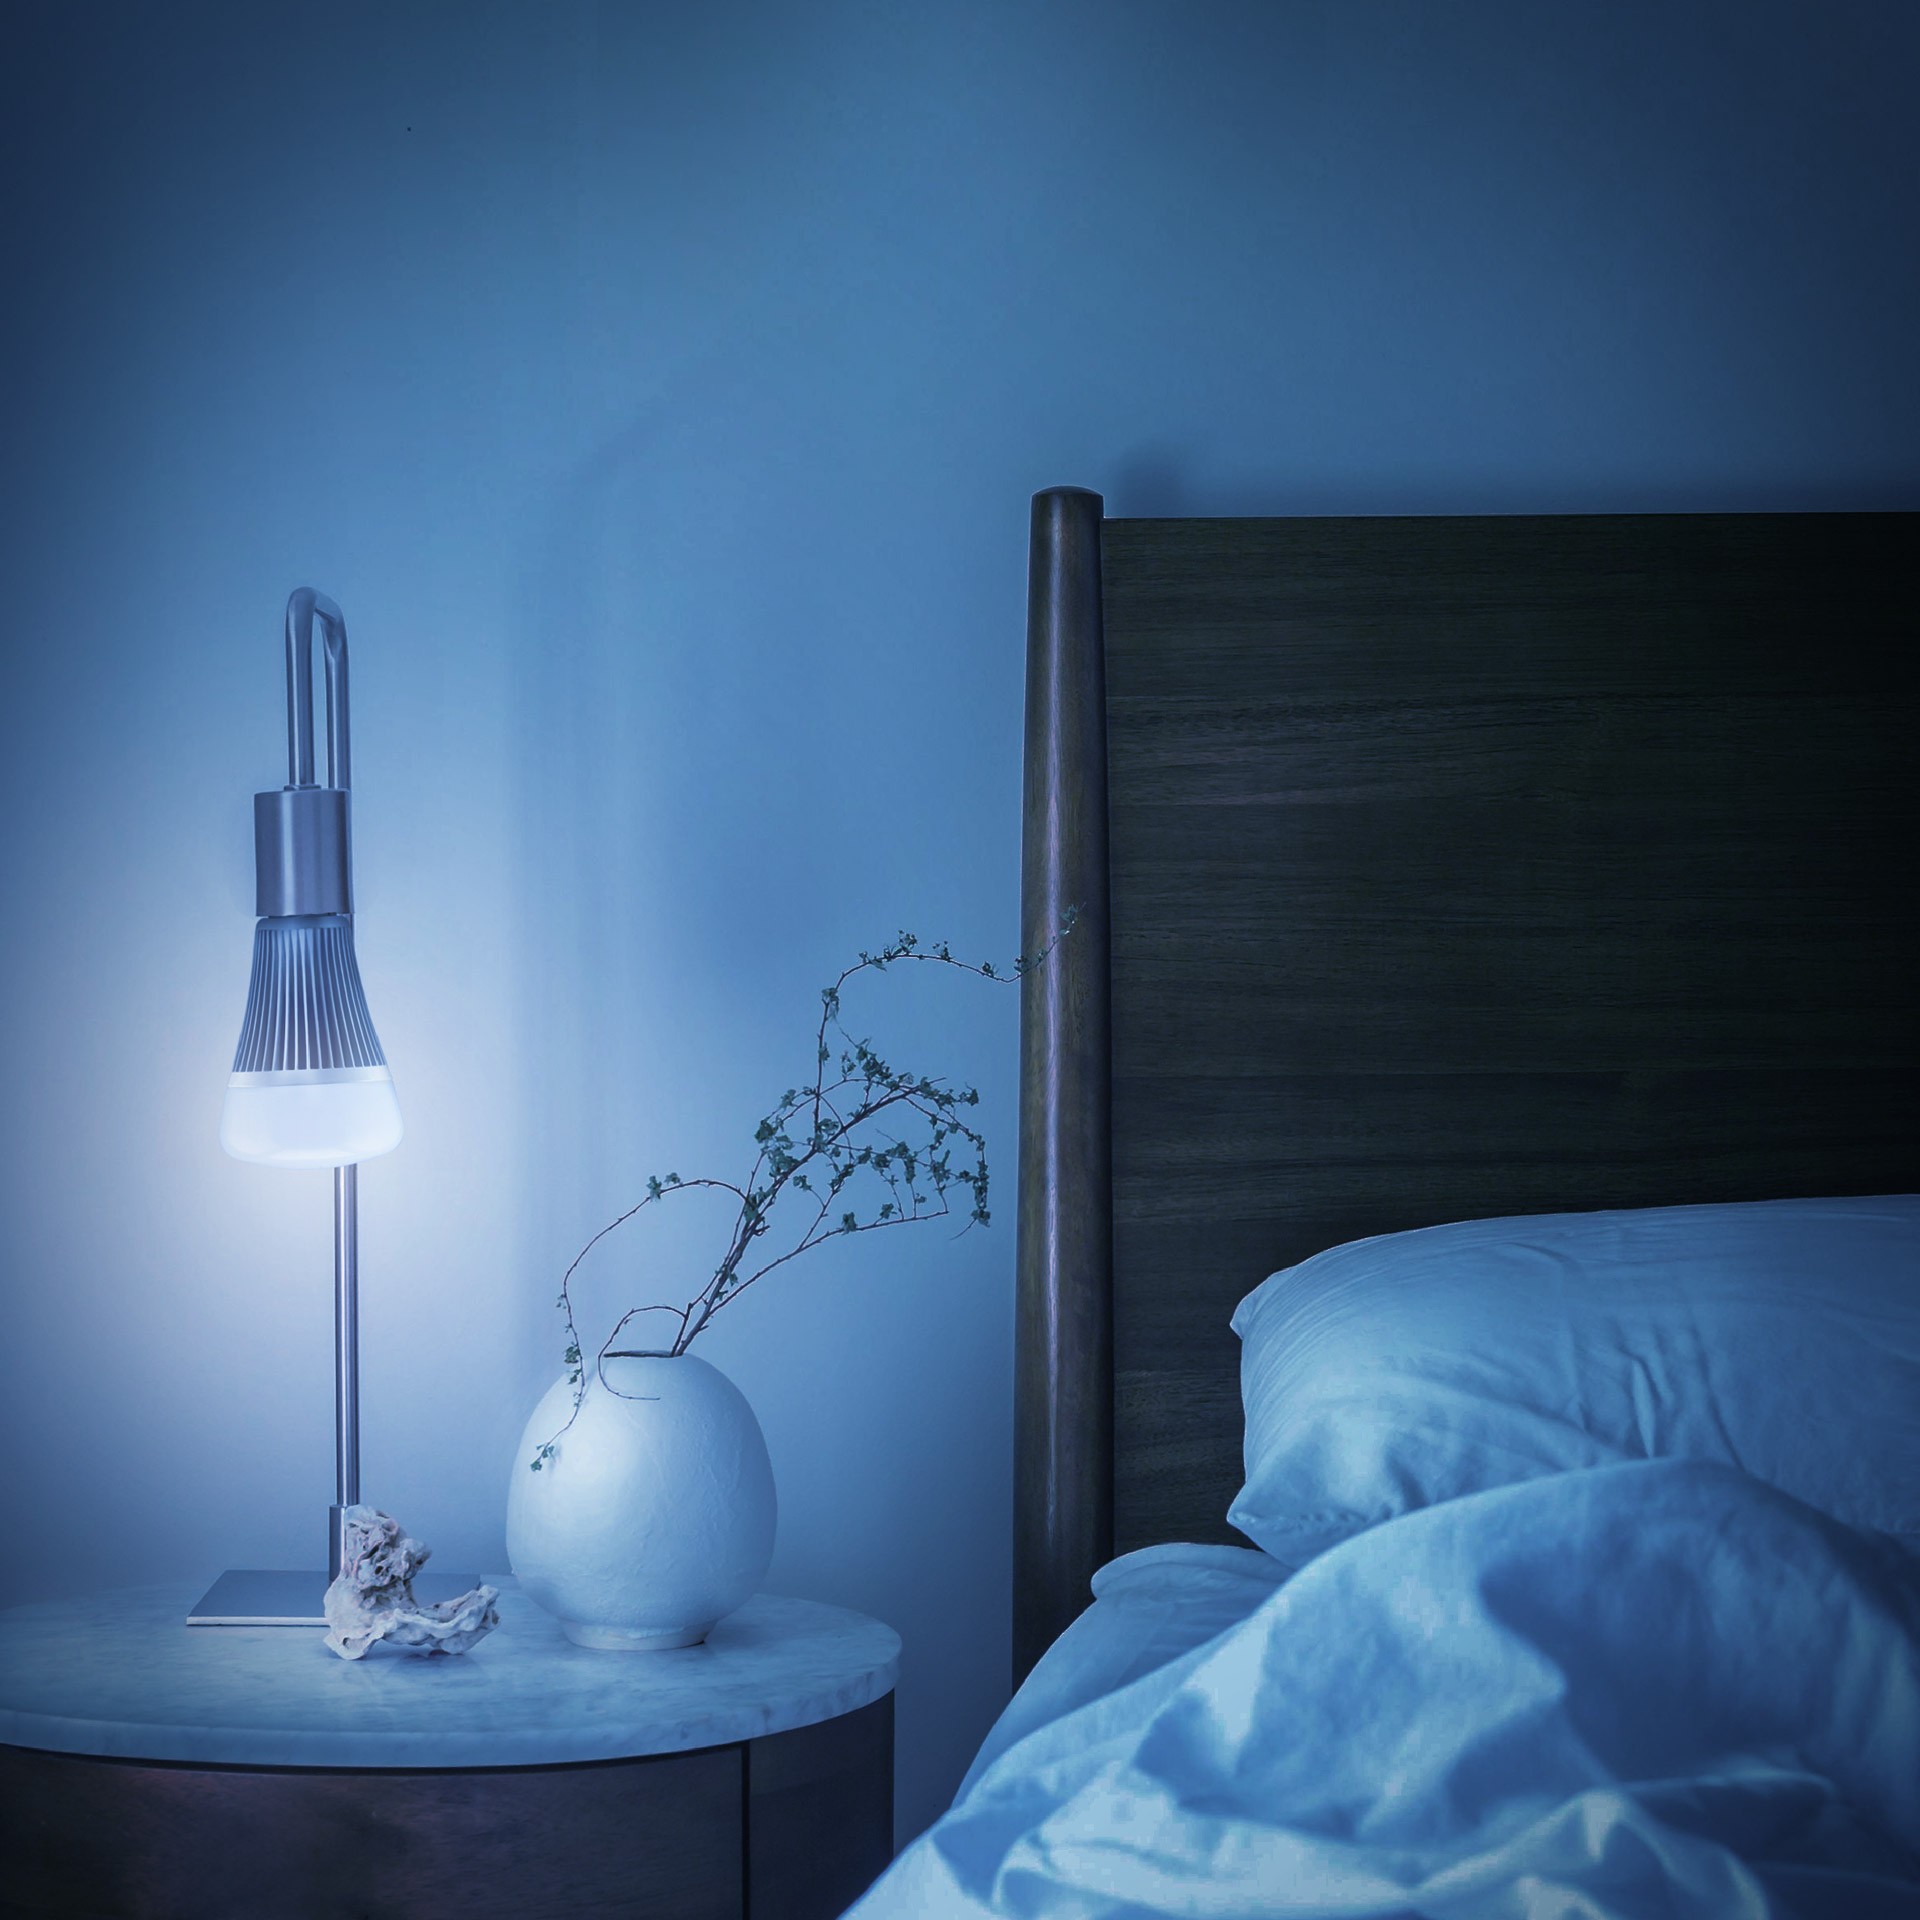 Les 5 avantages d'un éclairage LED connecté ! - Actualité Eclairage LED -  Blog Deliled